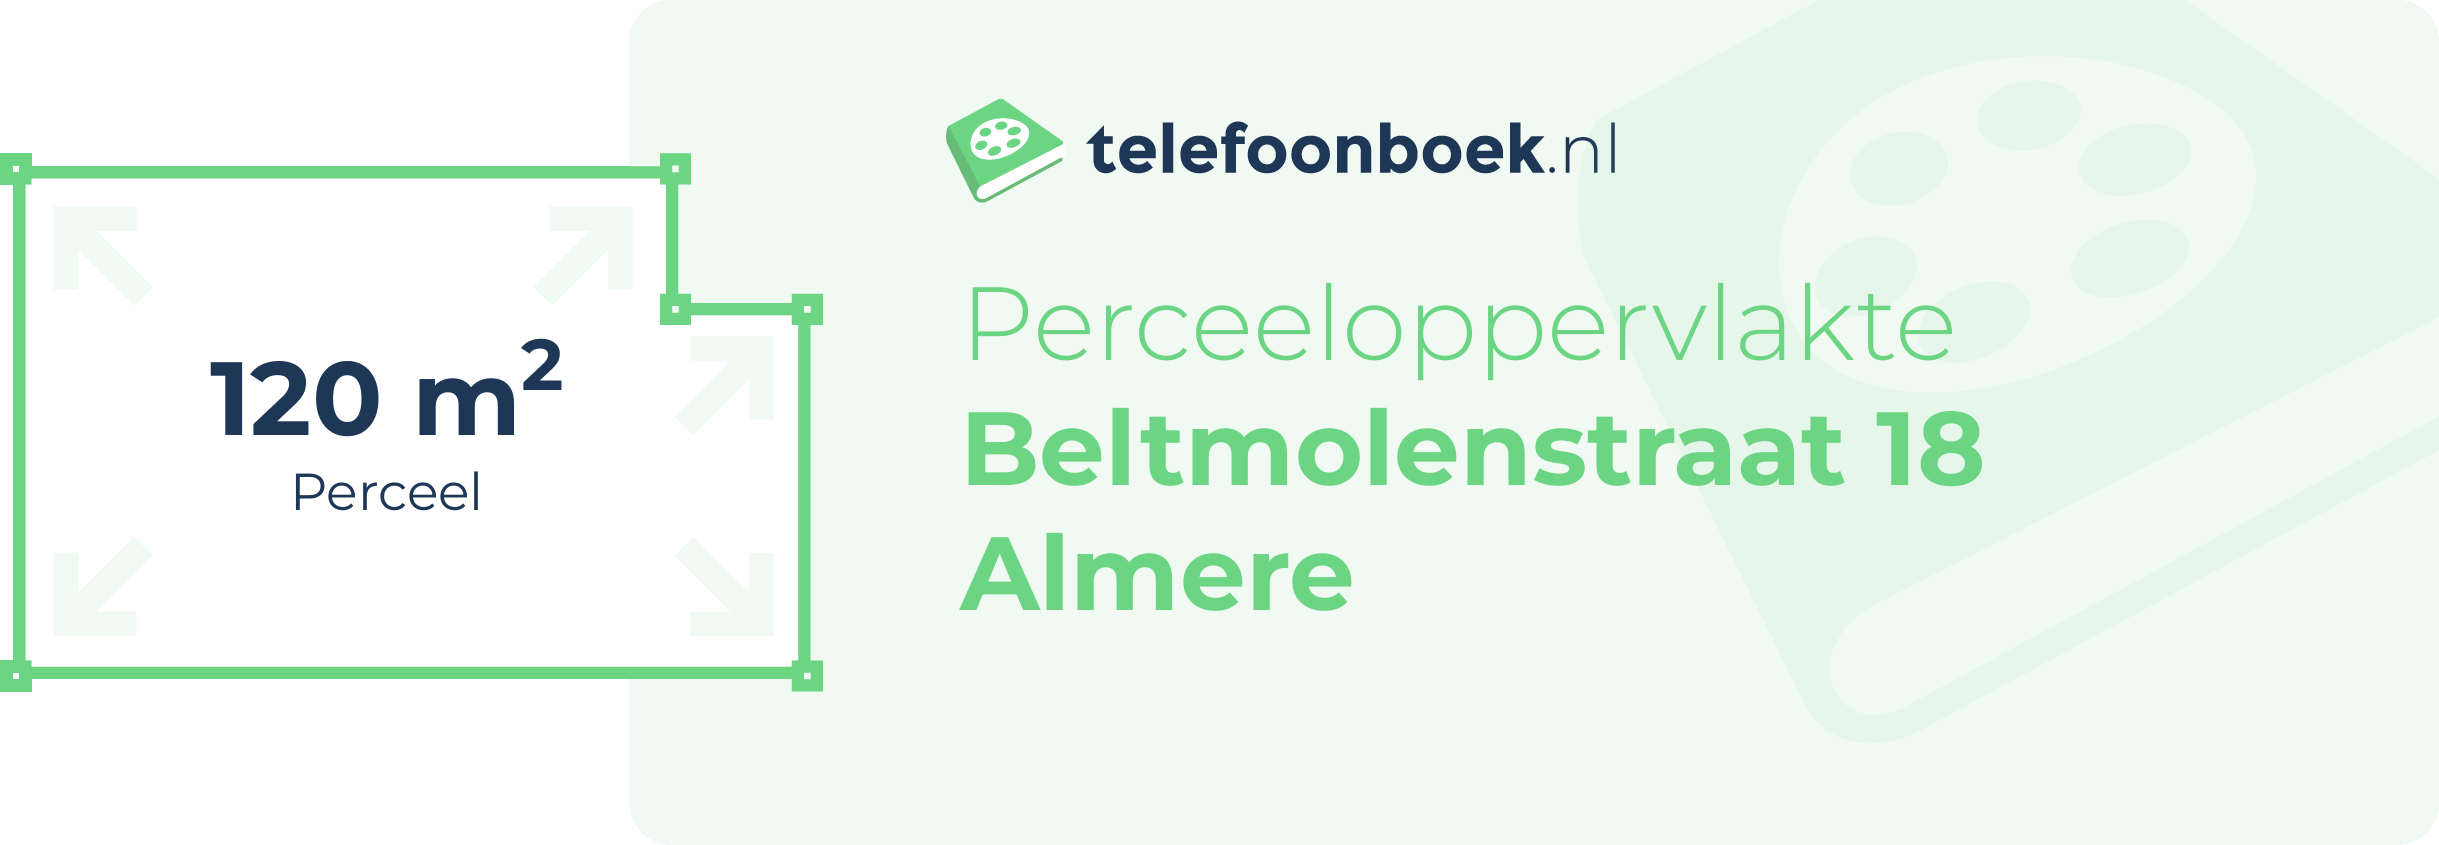 Perceeloppervlakte Beltmolenstraat 18 Almere